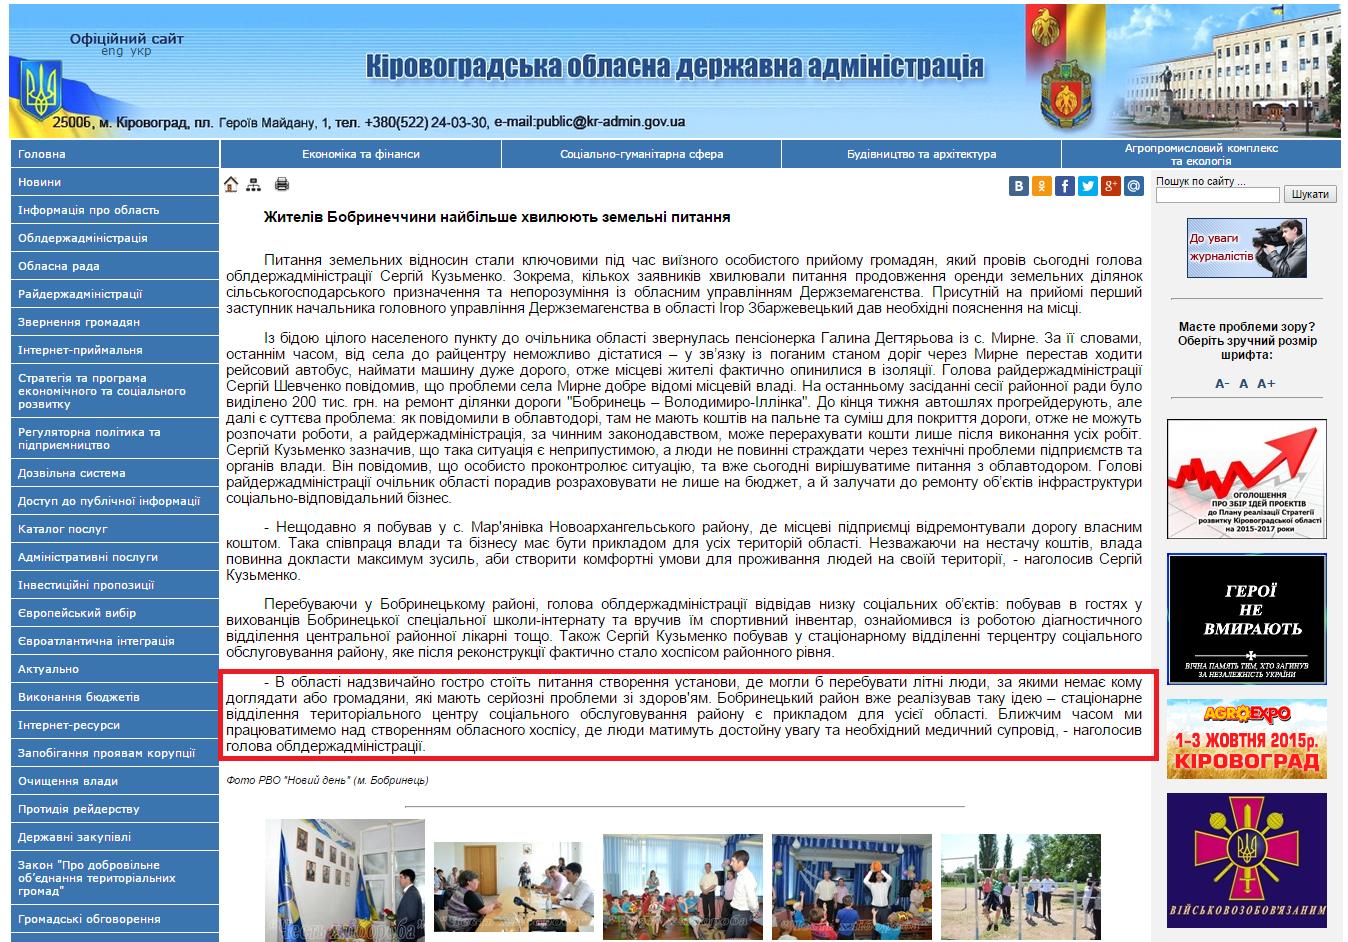 http://www.kr-admin.gov.ua/start.php?q=News1/Ua/2015/03061503.html